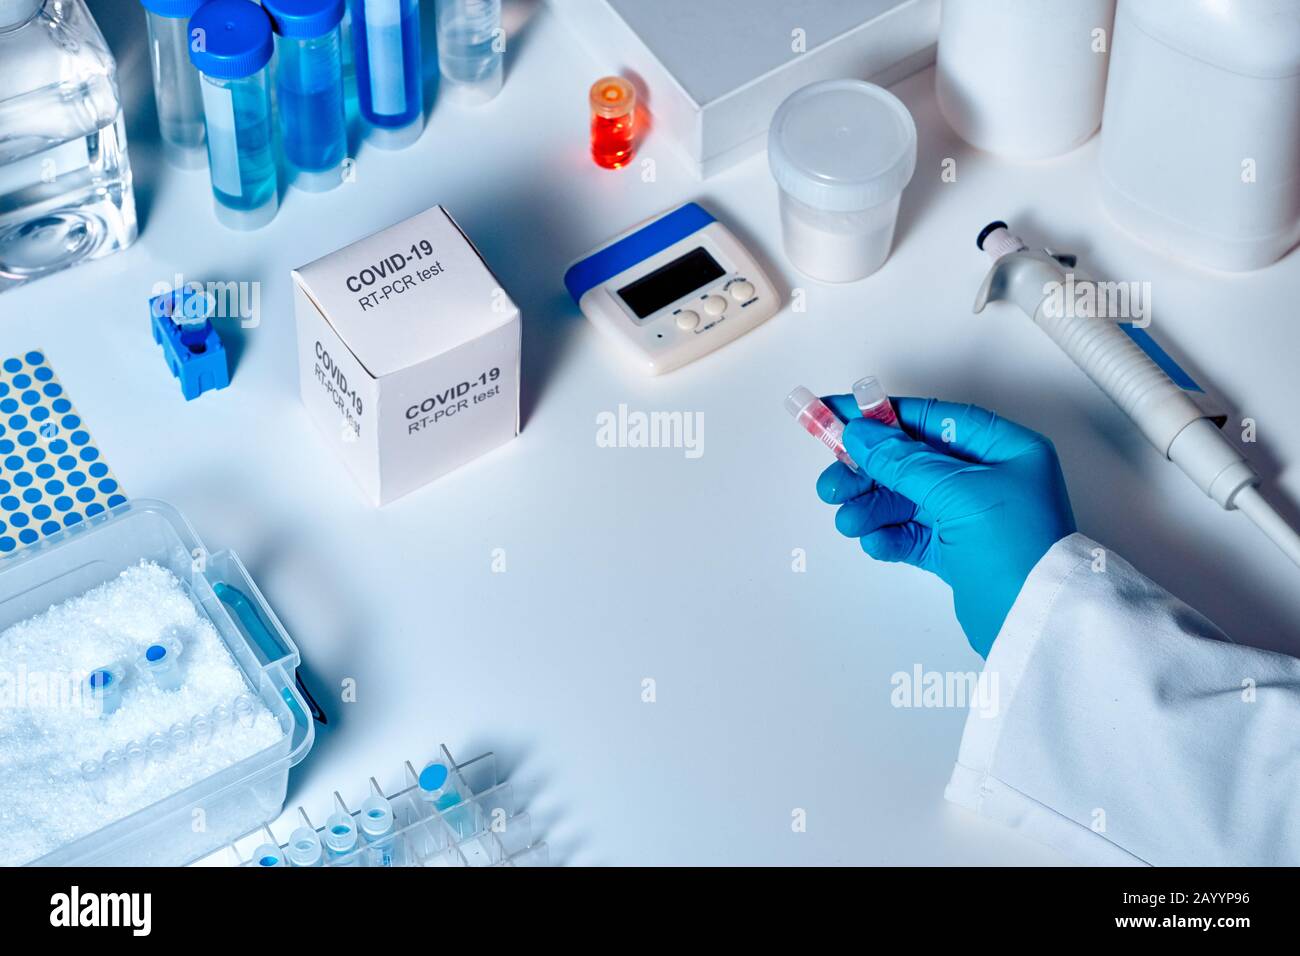 Nuovo kit di diagnostica per pcr nCoV per coronavirus 2019. Kit RT-PCR per rilevare la presenza di virus 2019-nCoV o covid19 nei campioni clinici. Diam. In vitro Foto Stock